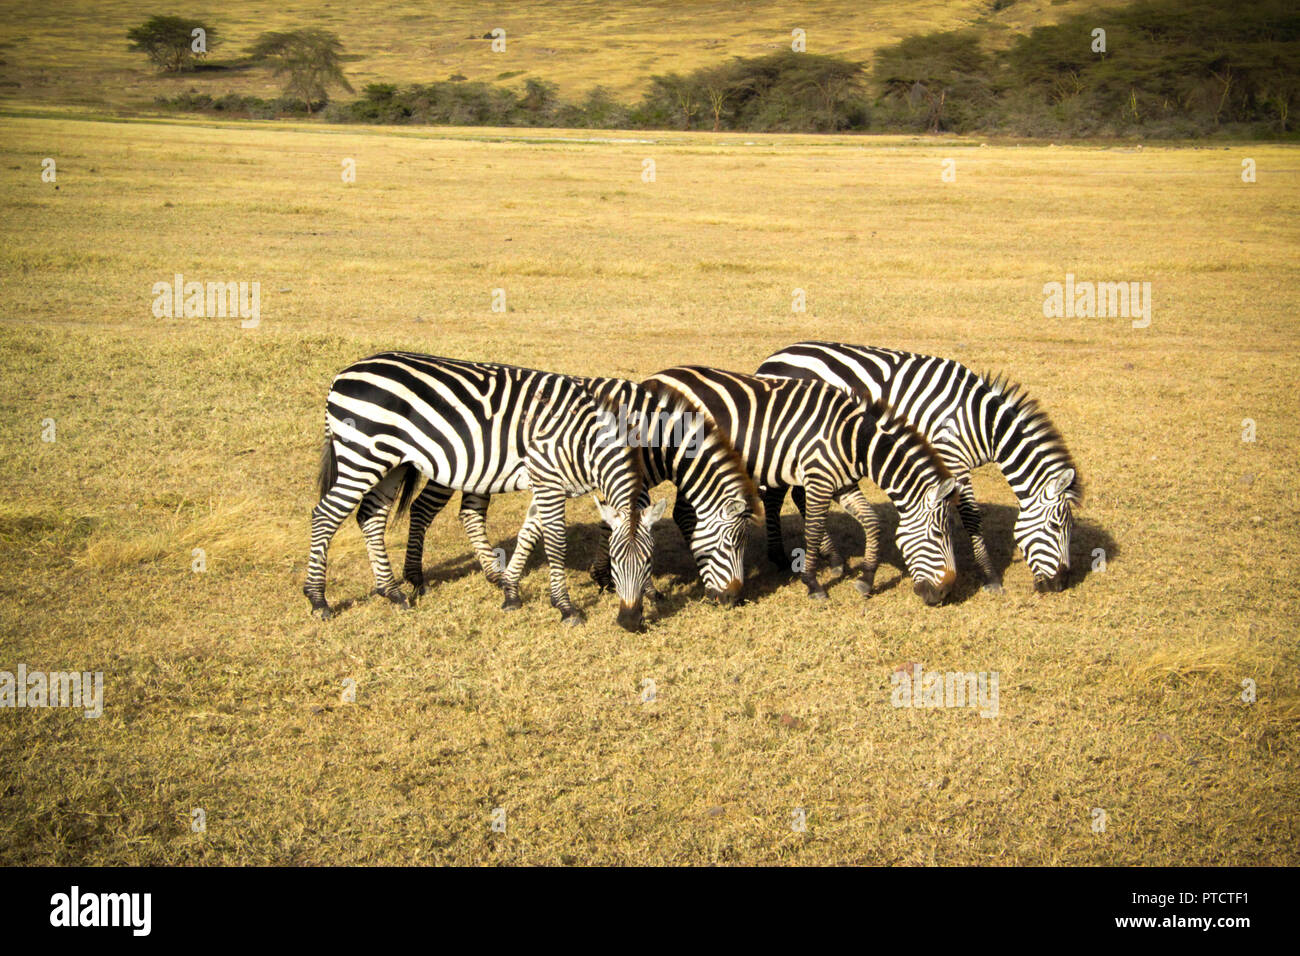 'Four in a row' - zebras of ngorongoro Stock Photo